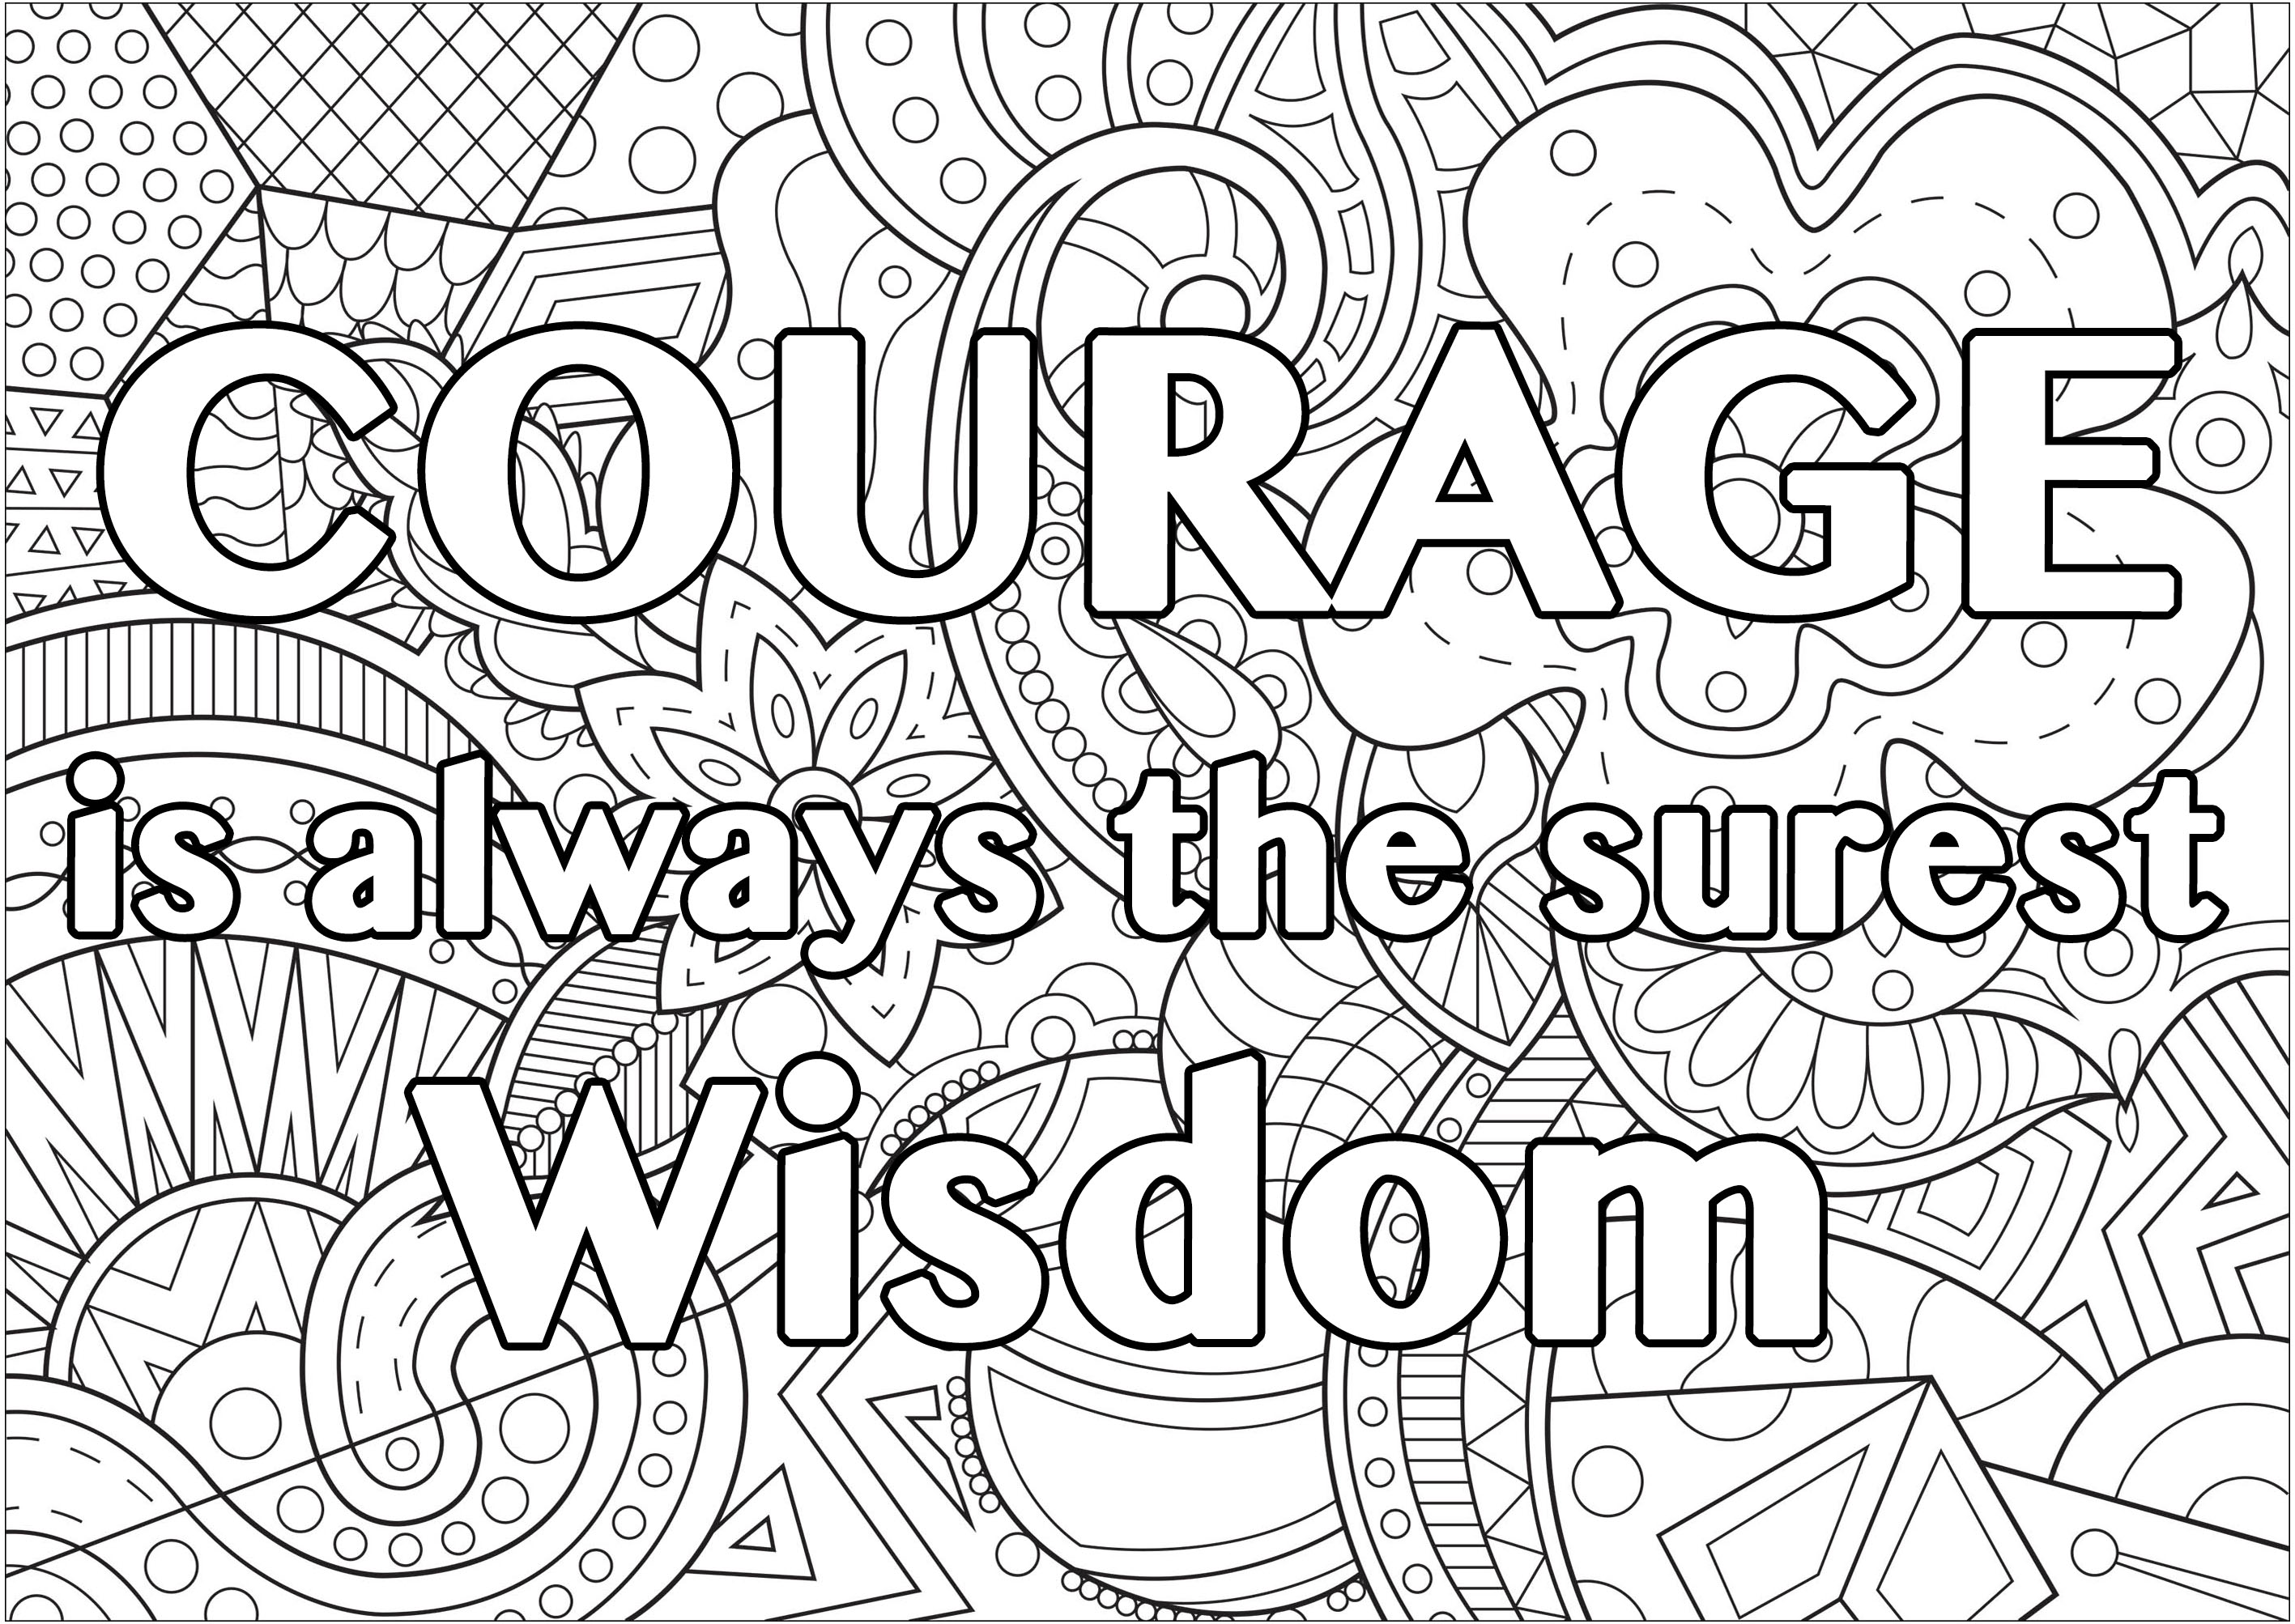 Il coraggio è sempre la saggezza più sicura (Citazione di Wilfred Grenfell - QuotesBook)